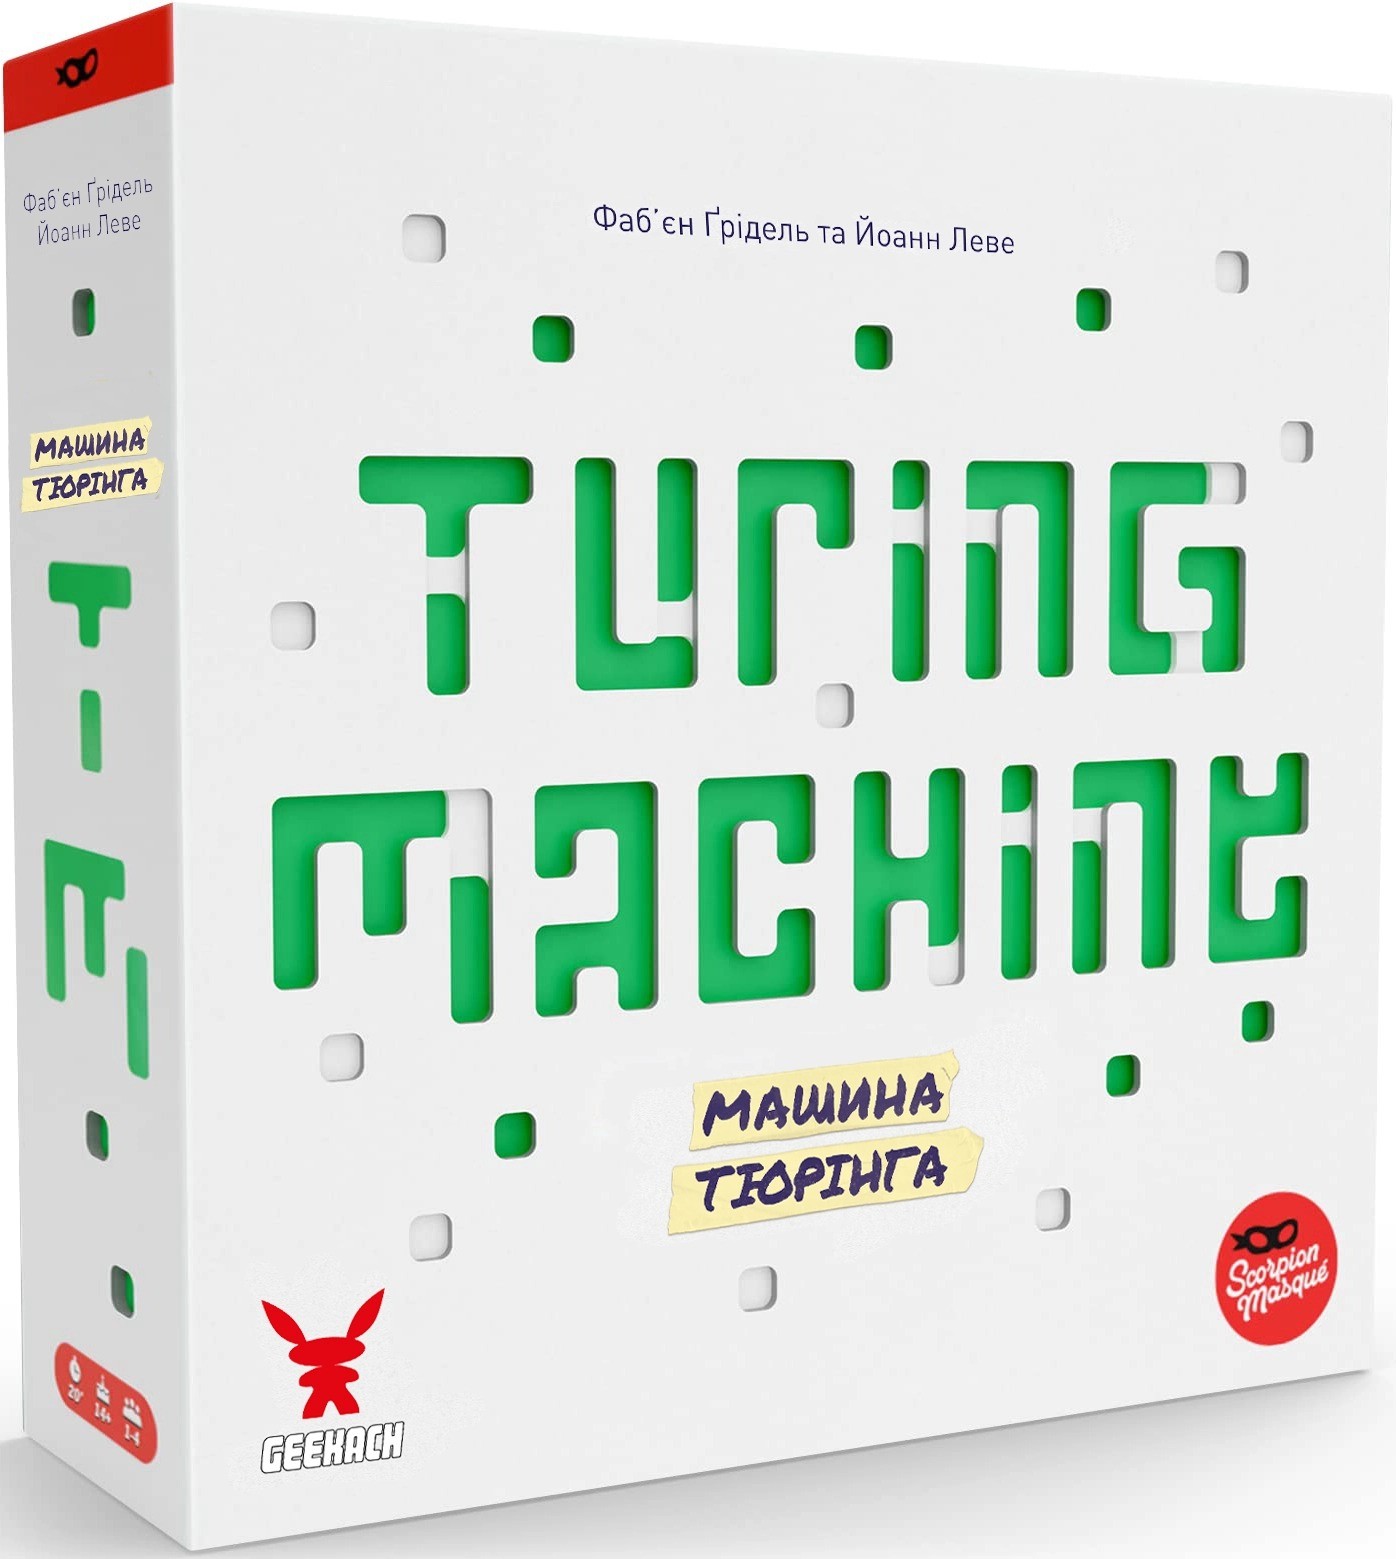 Настільна гра Машина Тюрінга (Turing Machine), бренду Geekach Games, для 1-4 гравців, час гри < 30хв. - KUBIX